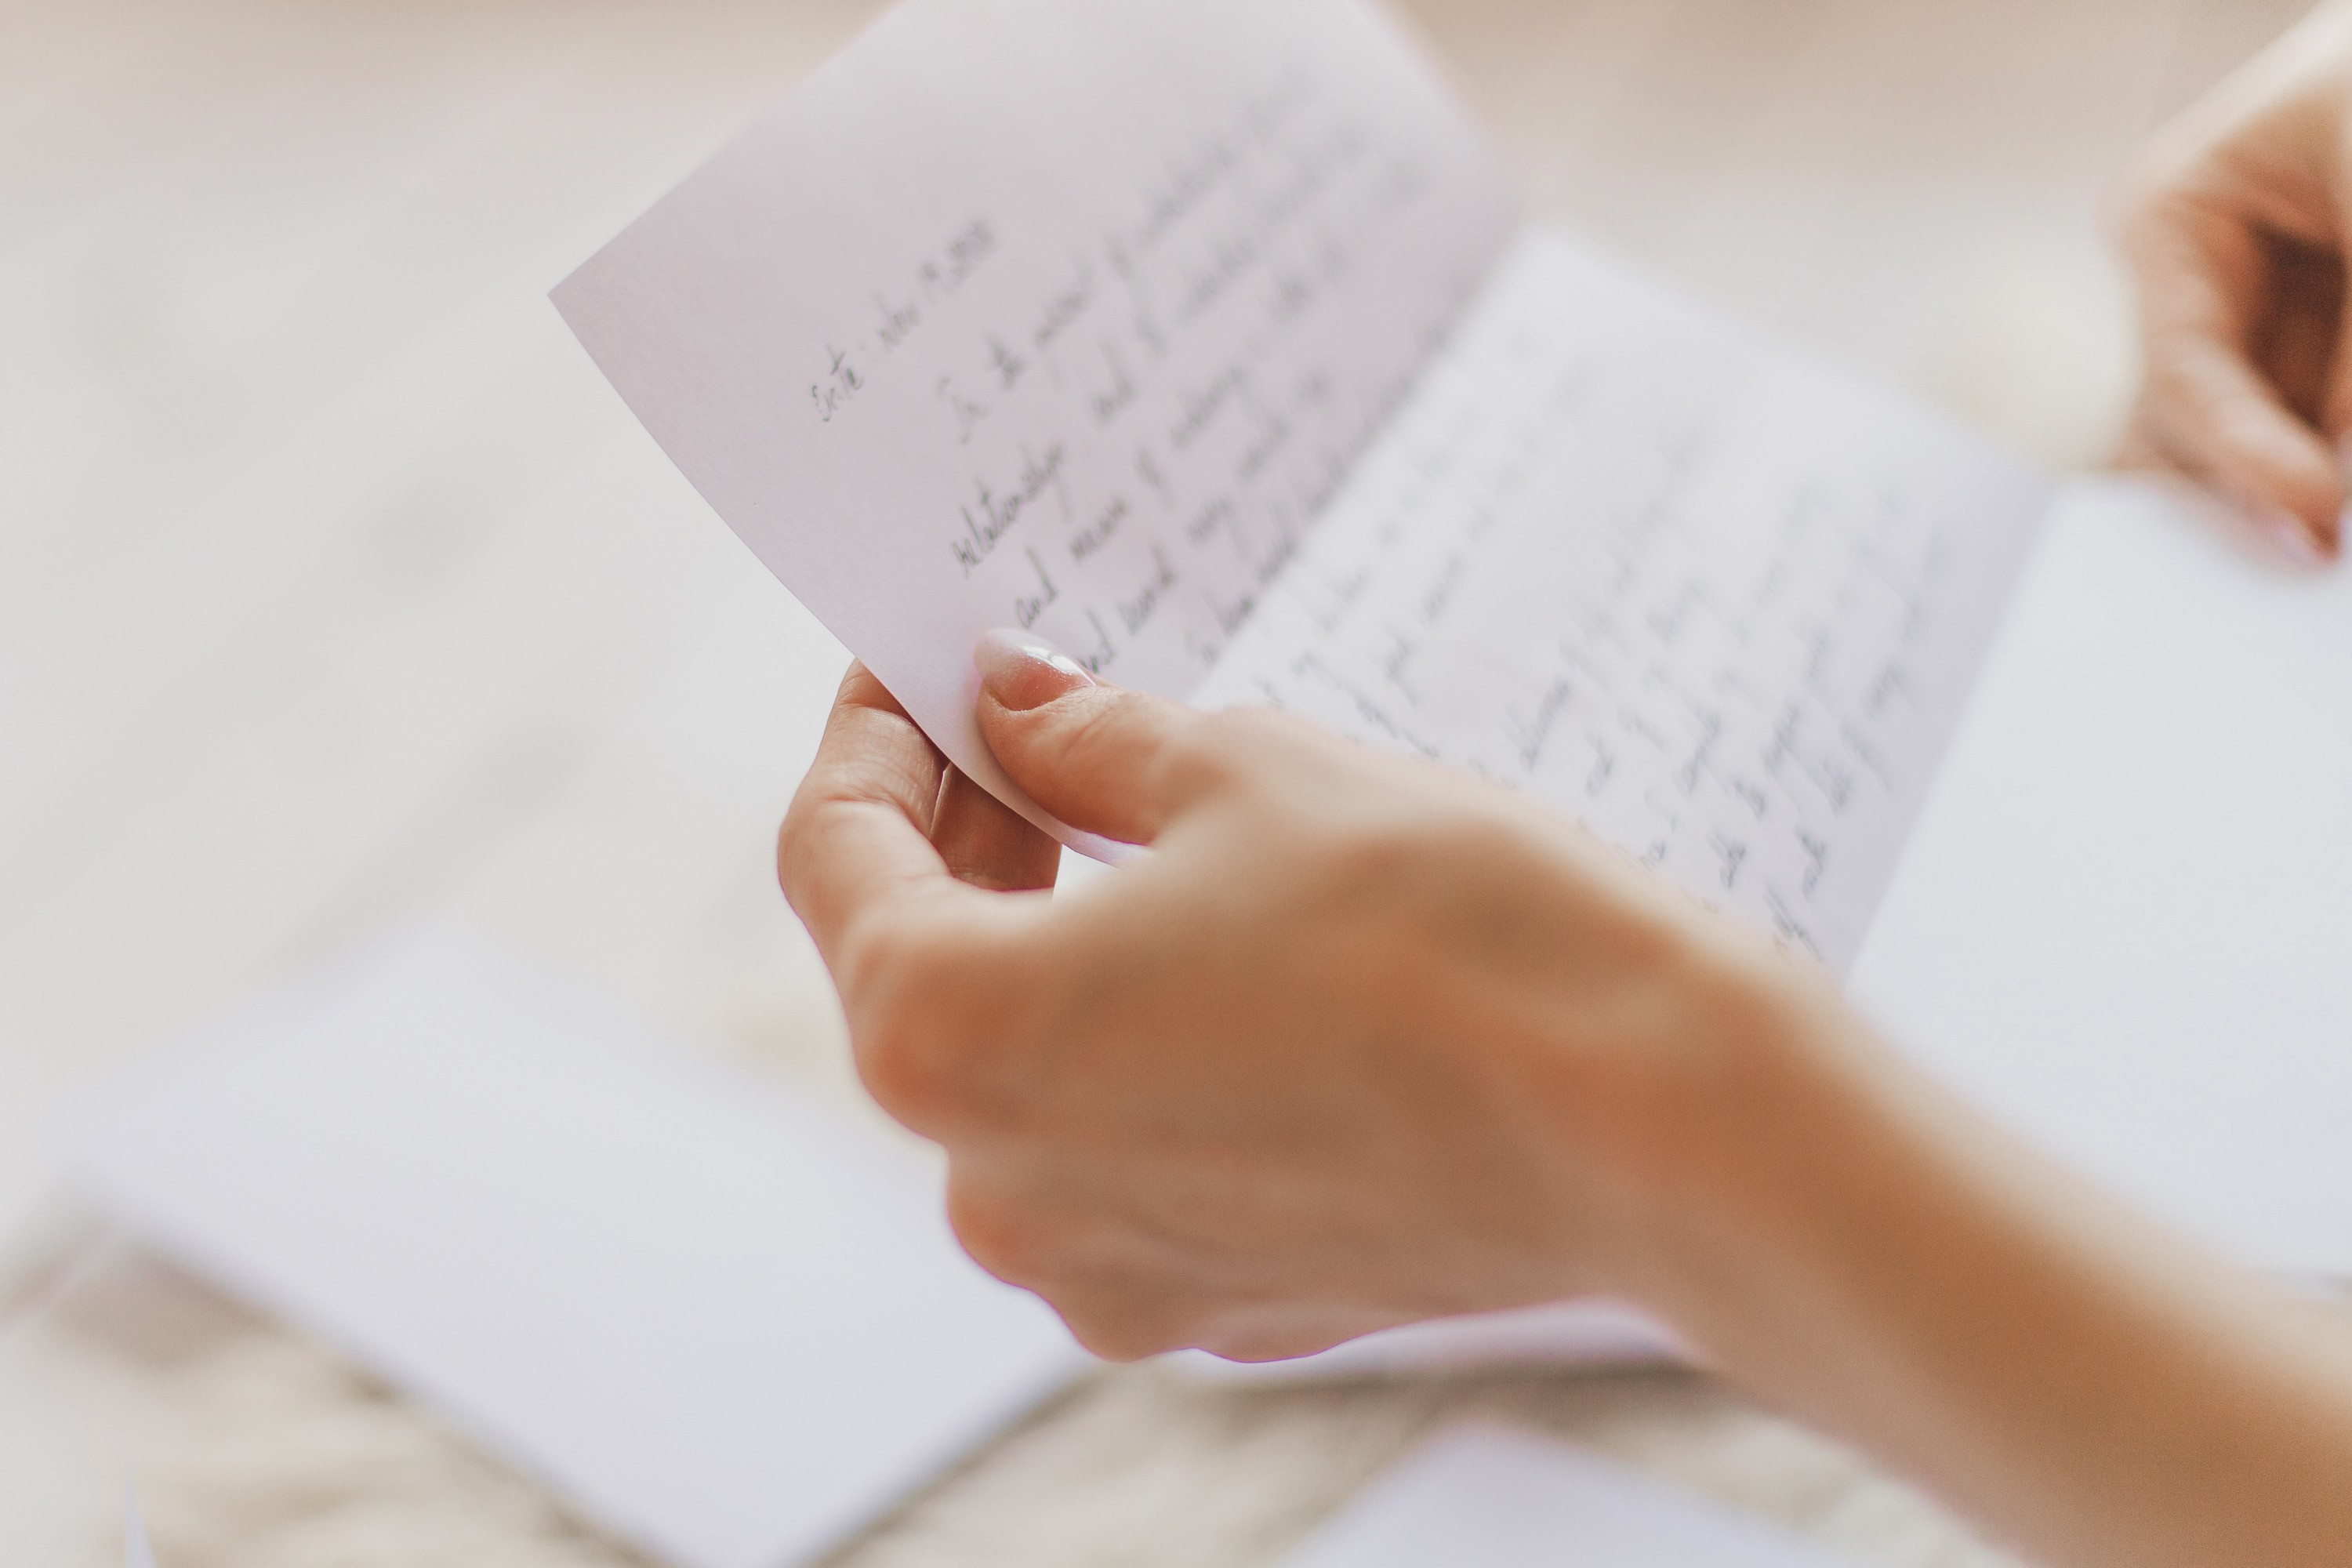 Une personne tenant une lettre | Source : Shutterstock